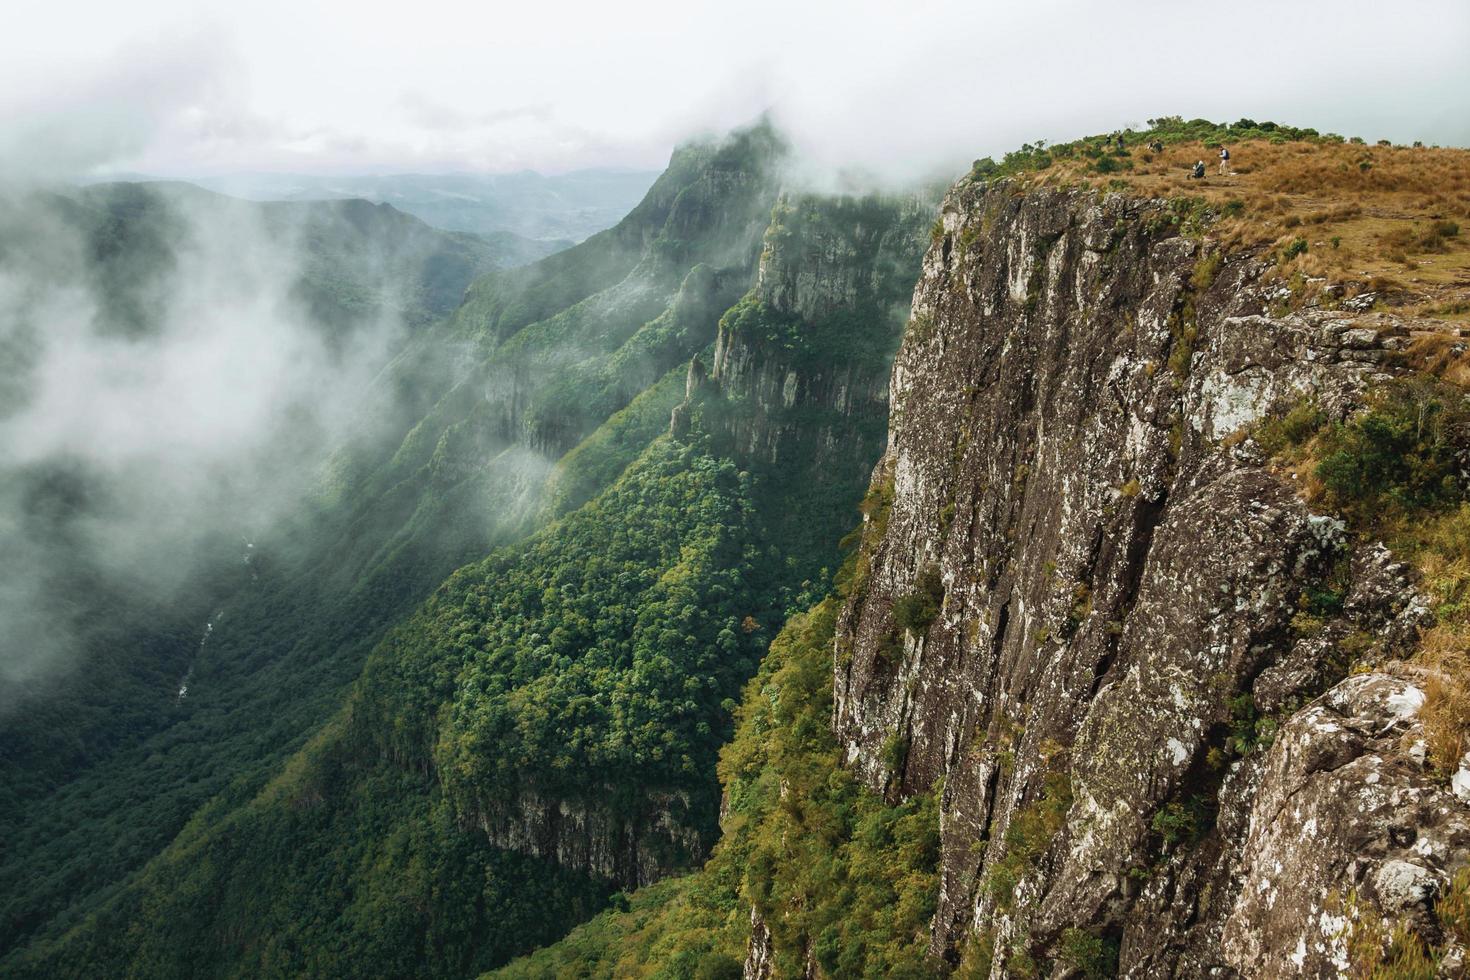 Fortaleza cañón con escarpados acantilados rocosos cubiertos por un espeso bosque y niebla que sube por el barranco cerca de cambara do sul. una pequeña ciudad rural en el sur de Brasil con increíbles atractivos turísticos naturales. foto